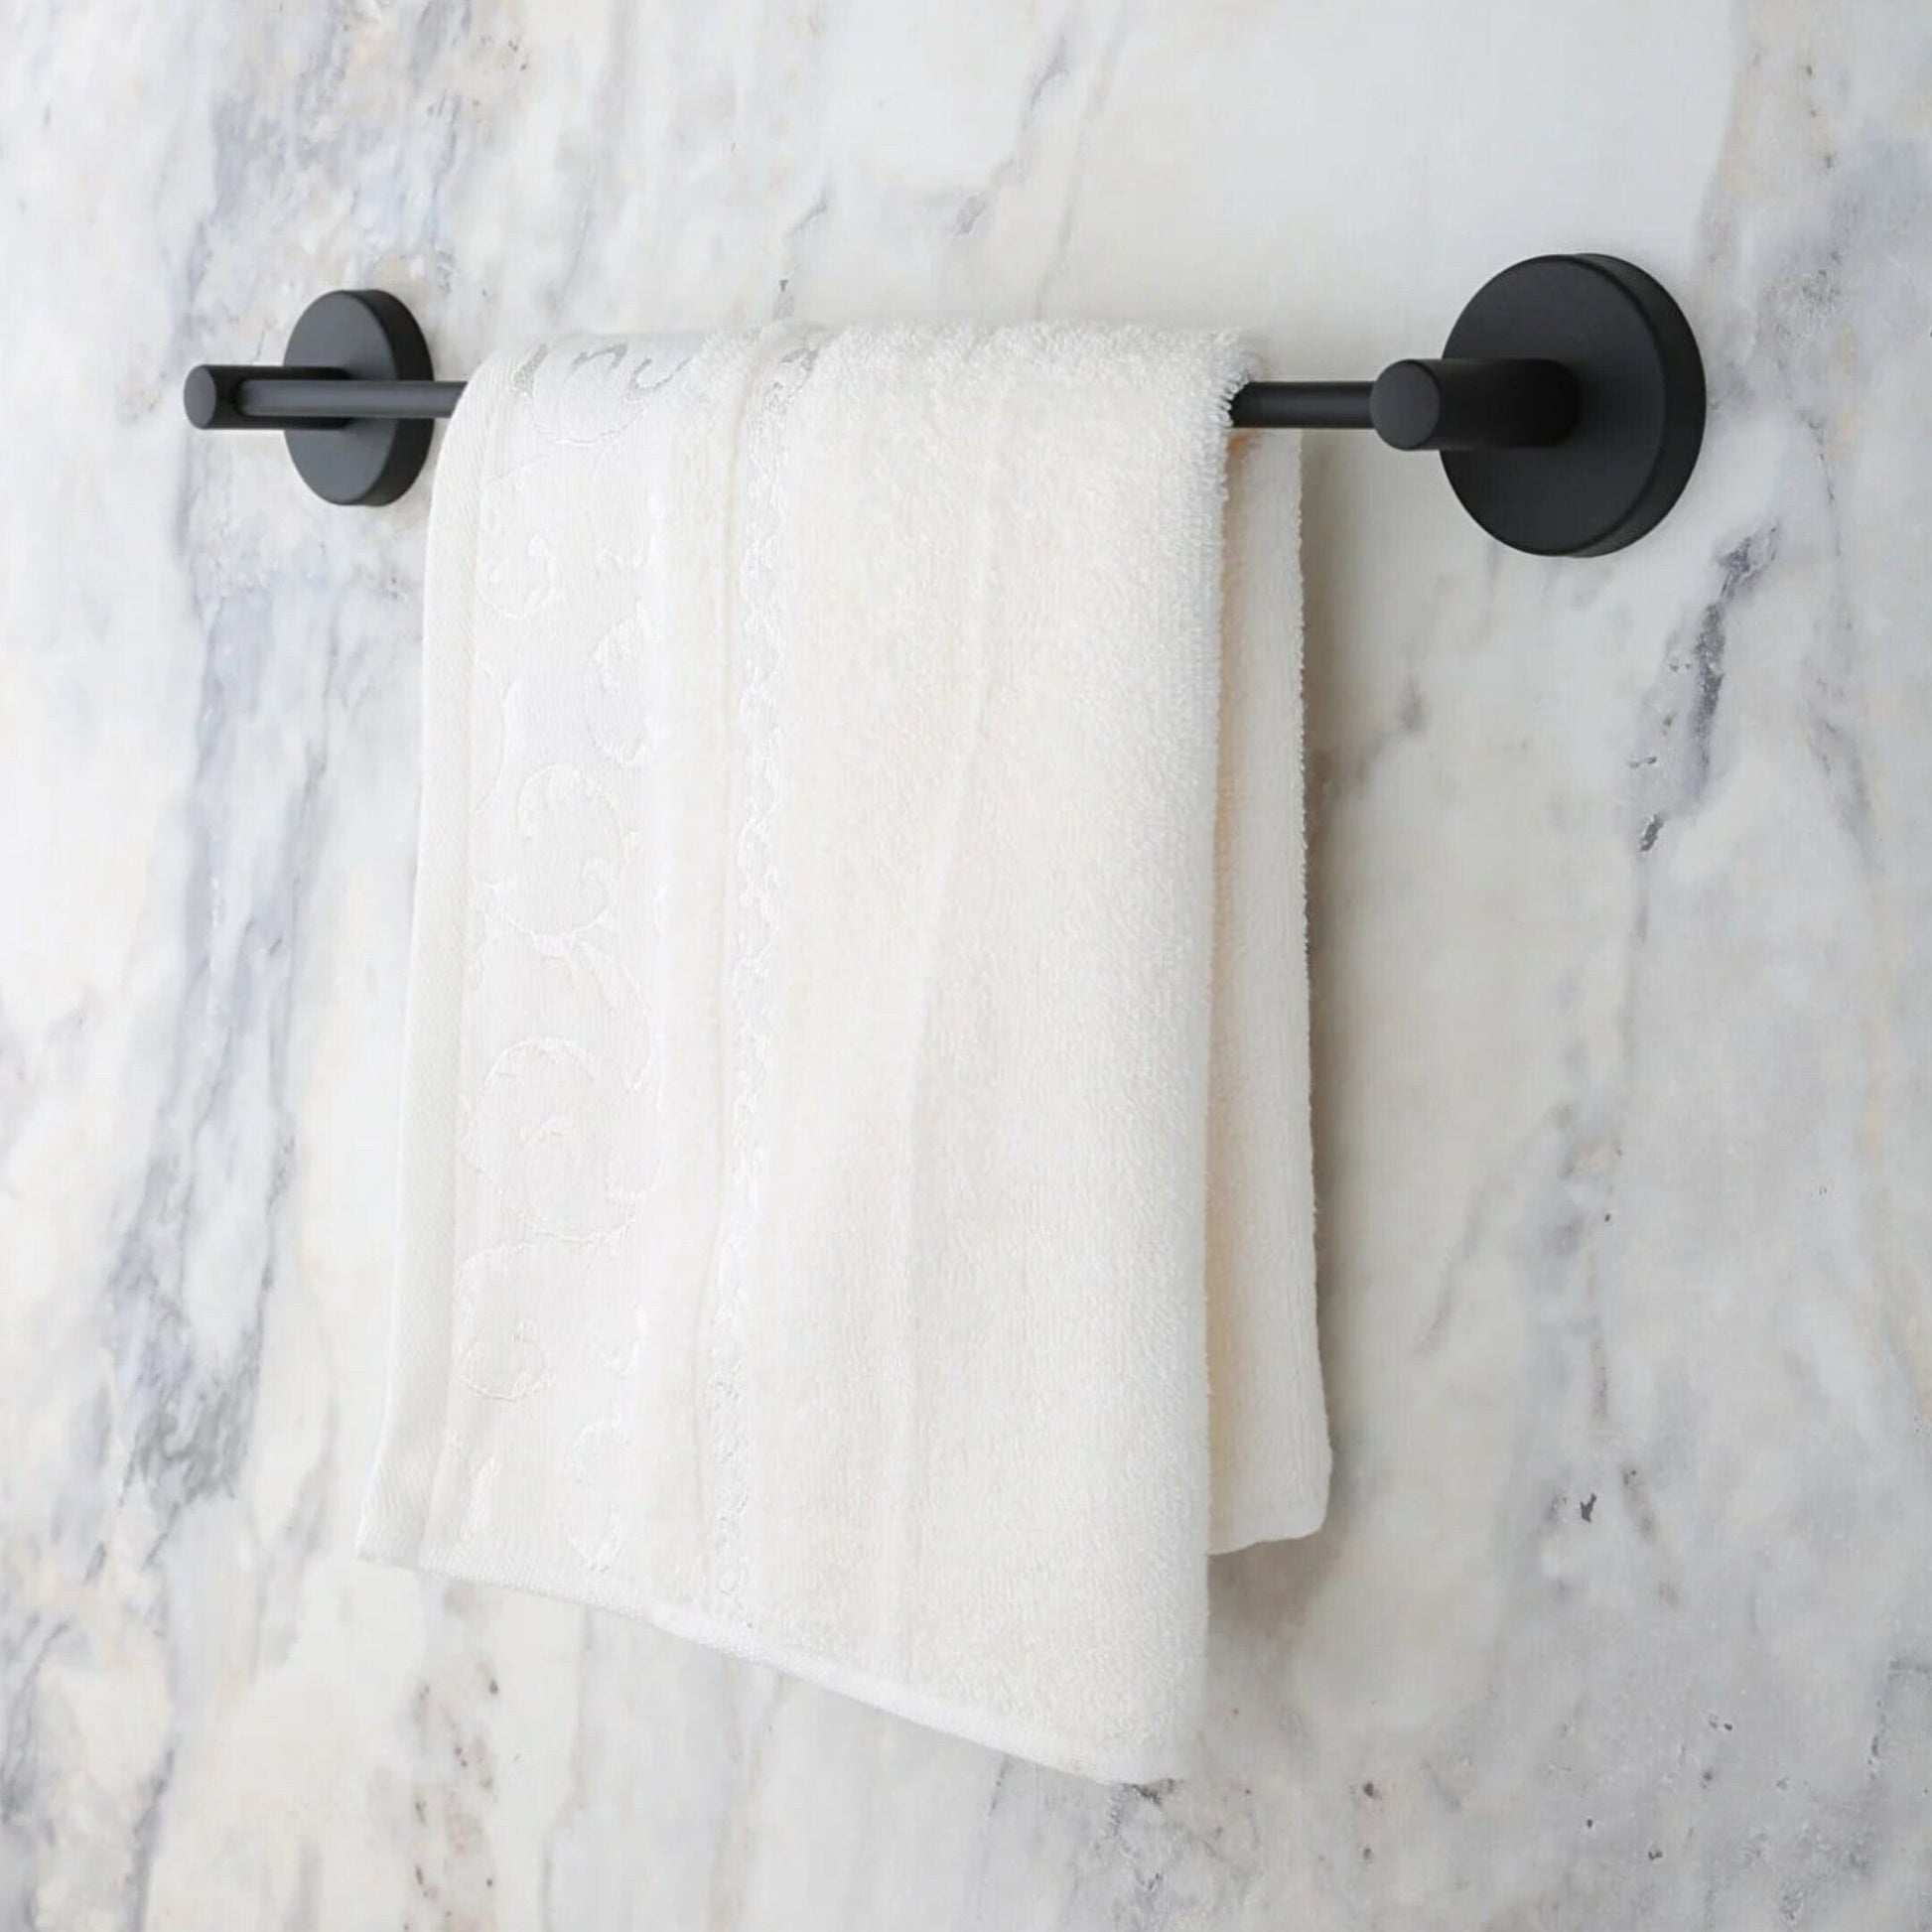 Minimalist Towel Rack (43cm), Matt Black, Metal Stainless Steel, Bathroom storage - Babila Home